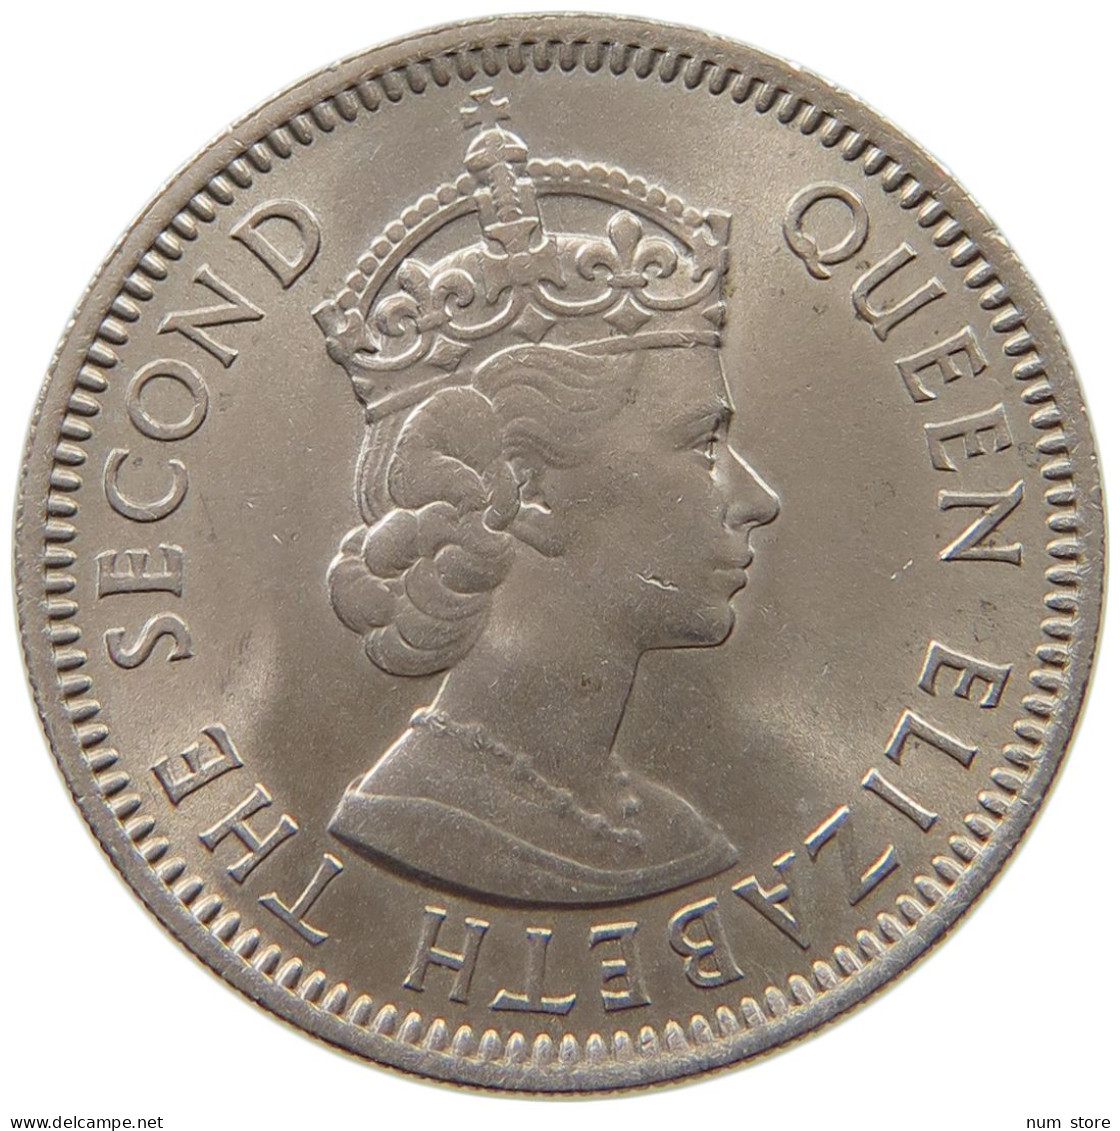 BRITISH CARIBBEAN TERRITORIES 25 CENTS 1965 Elizabeth II. (1952-2022) #s037 0255 - Britse Caribische Gebieden